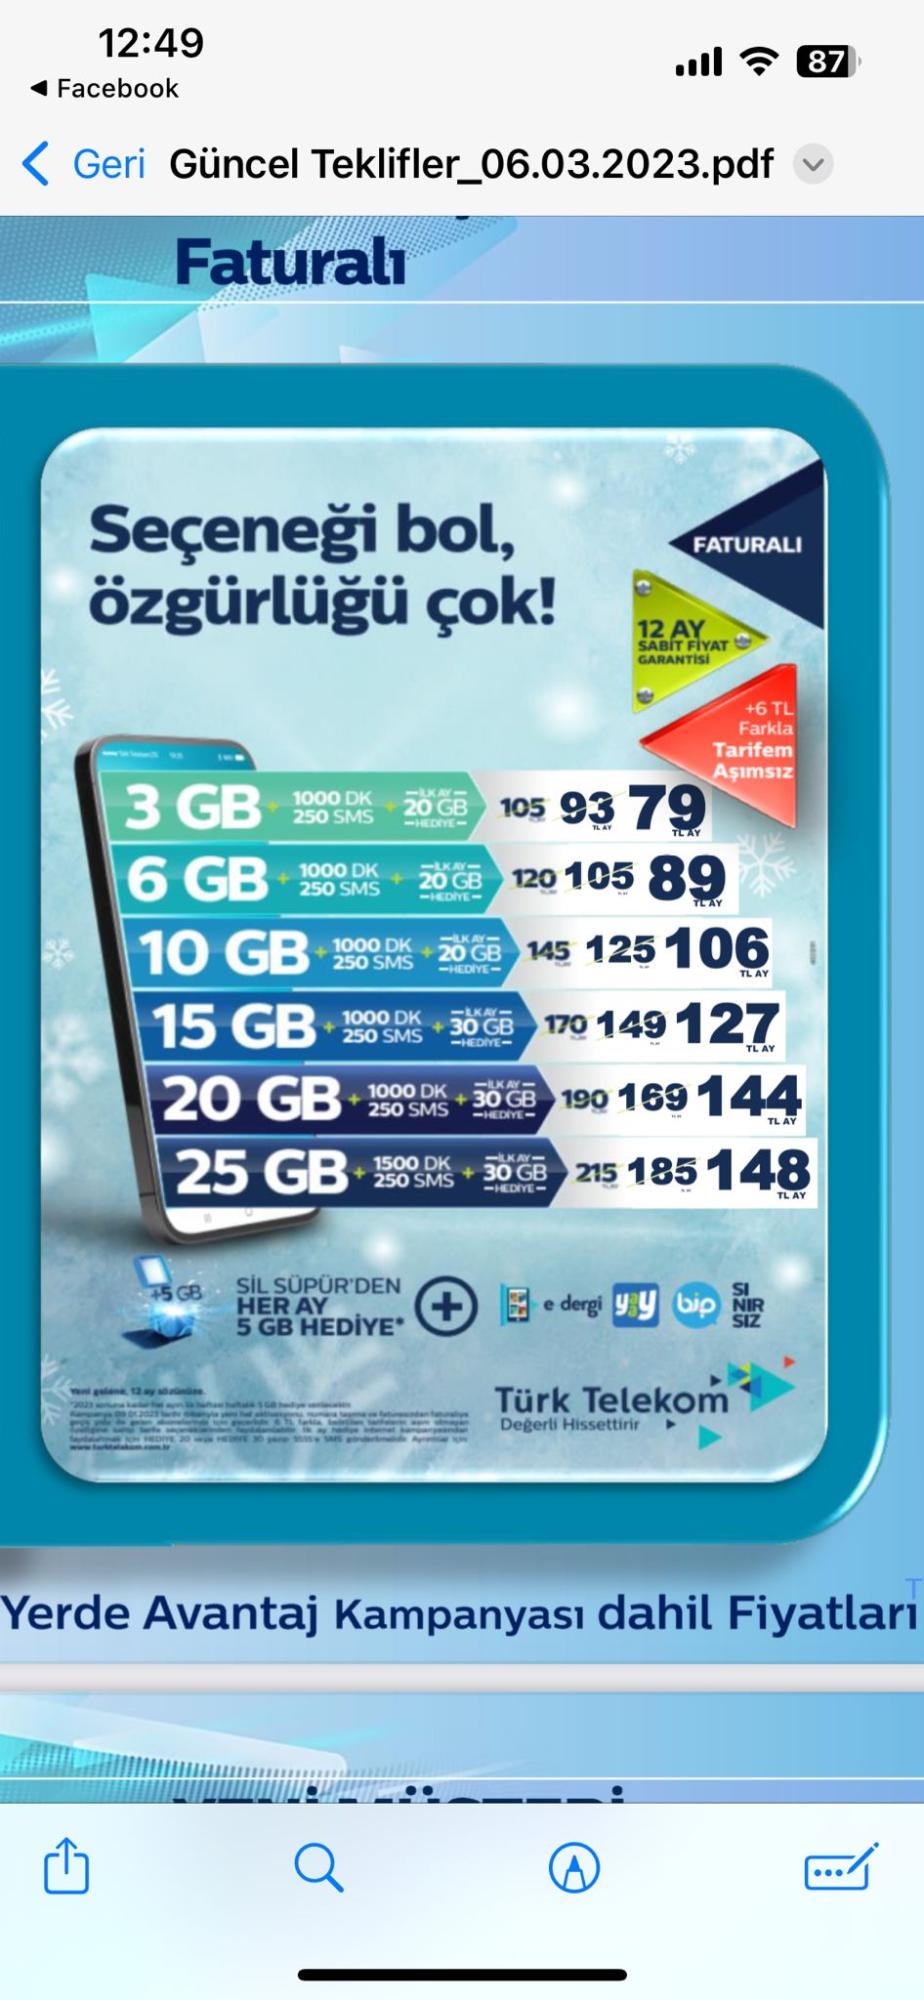 türk telekom paket fiyatında yanlışlık yapıyor Şikayetvar